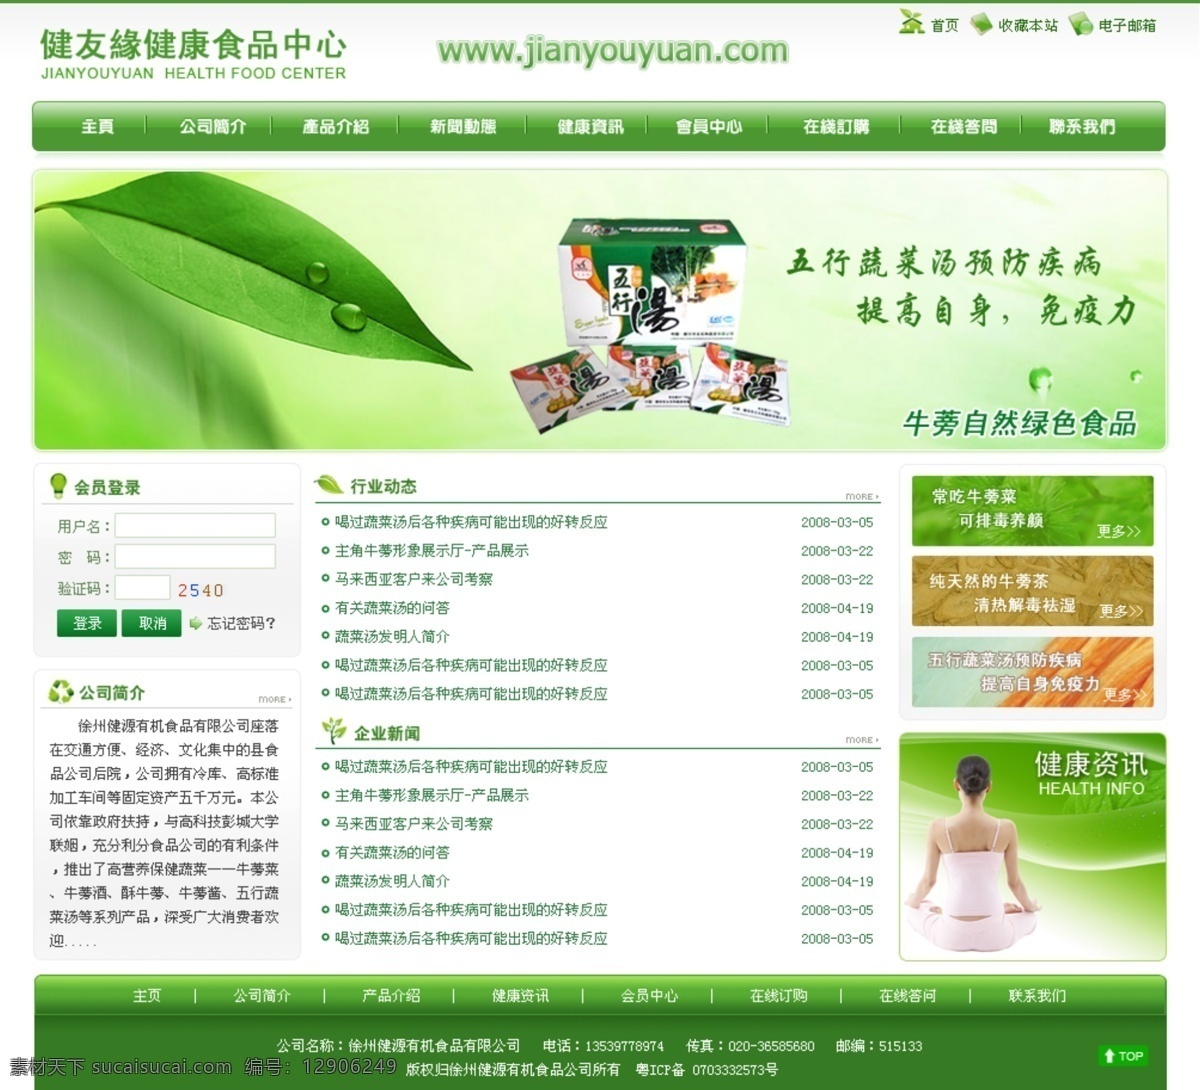 绿色 网页模板 源文件 中文模版 健康食品 公司 首页 模板下载 网页素材